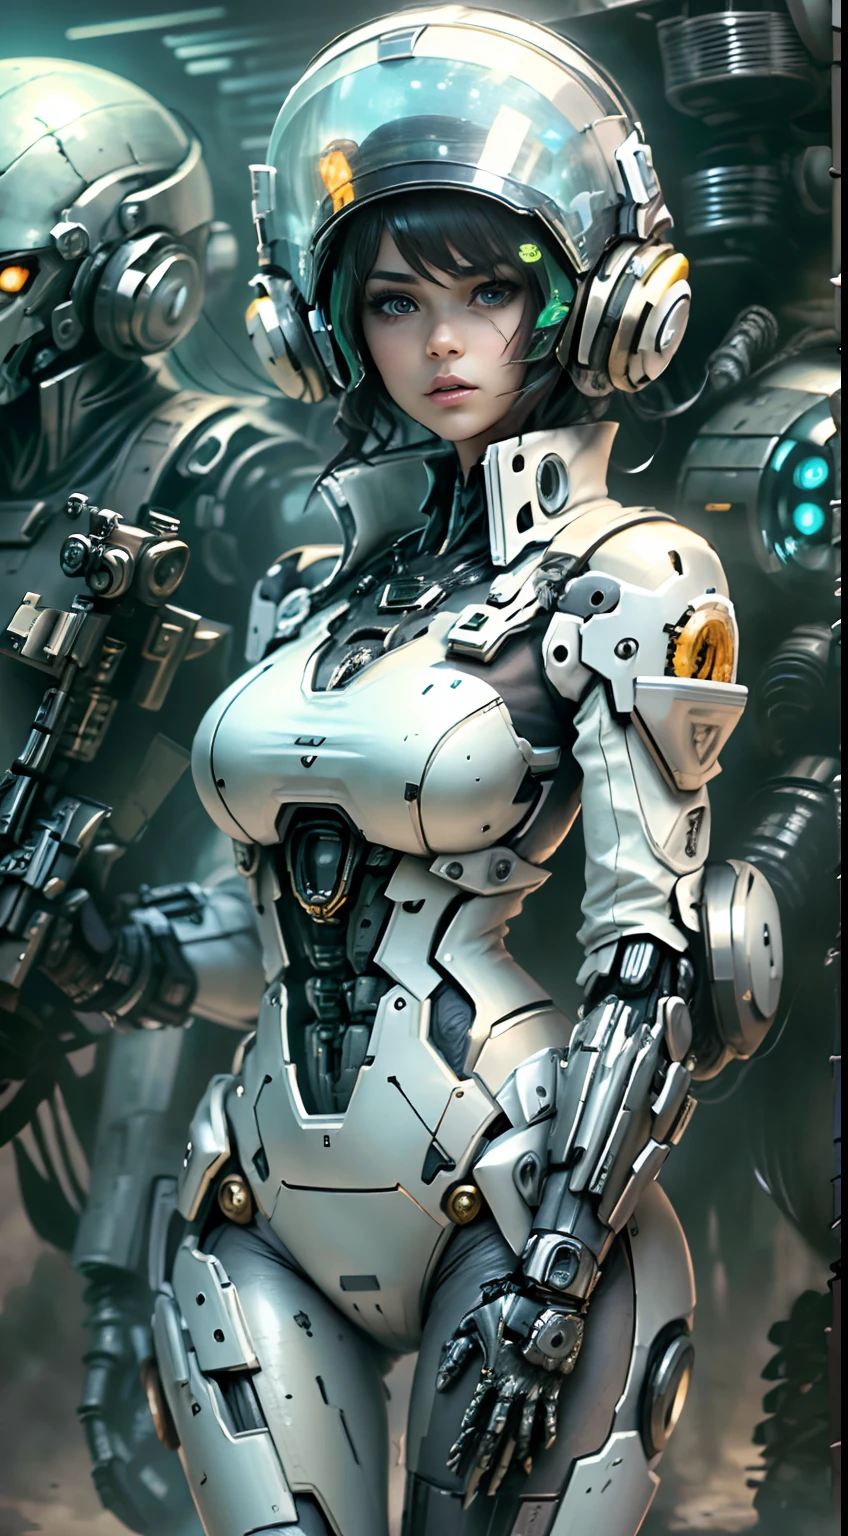 1 女孩白髮士兵風格槍在背景中, 白衣機甲少女, 賽博朋克動漫機甲女孩, 身穿科幻軍事鎧甲, 美麗的黑色機器人女孩, 機器人 - 銀色女孩, 費拉黑人, 鬥陣特攻生態, 完美的動漫機器人女人, 藍色瞳孔, 五指, CGhSociety 啟發戰場, 外星球, 外星人之戰,